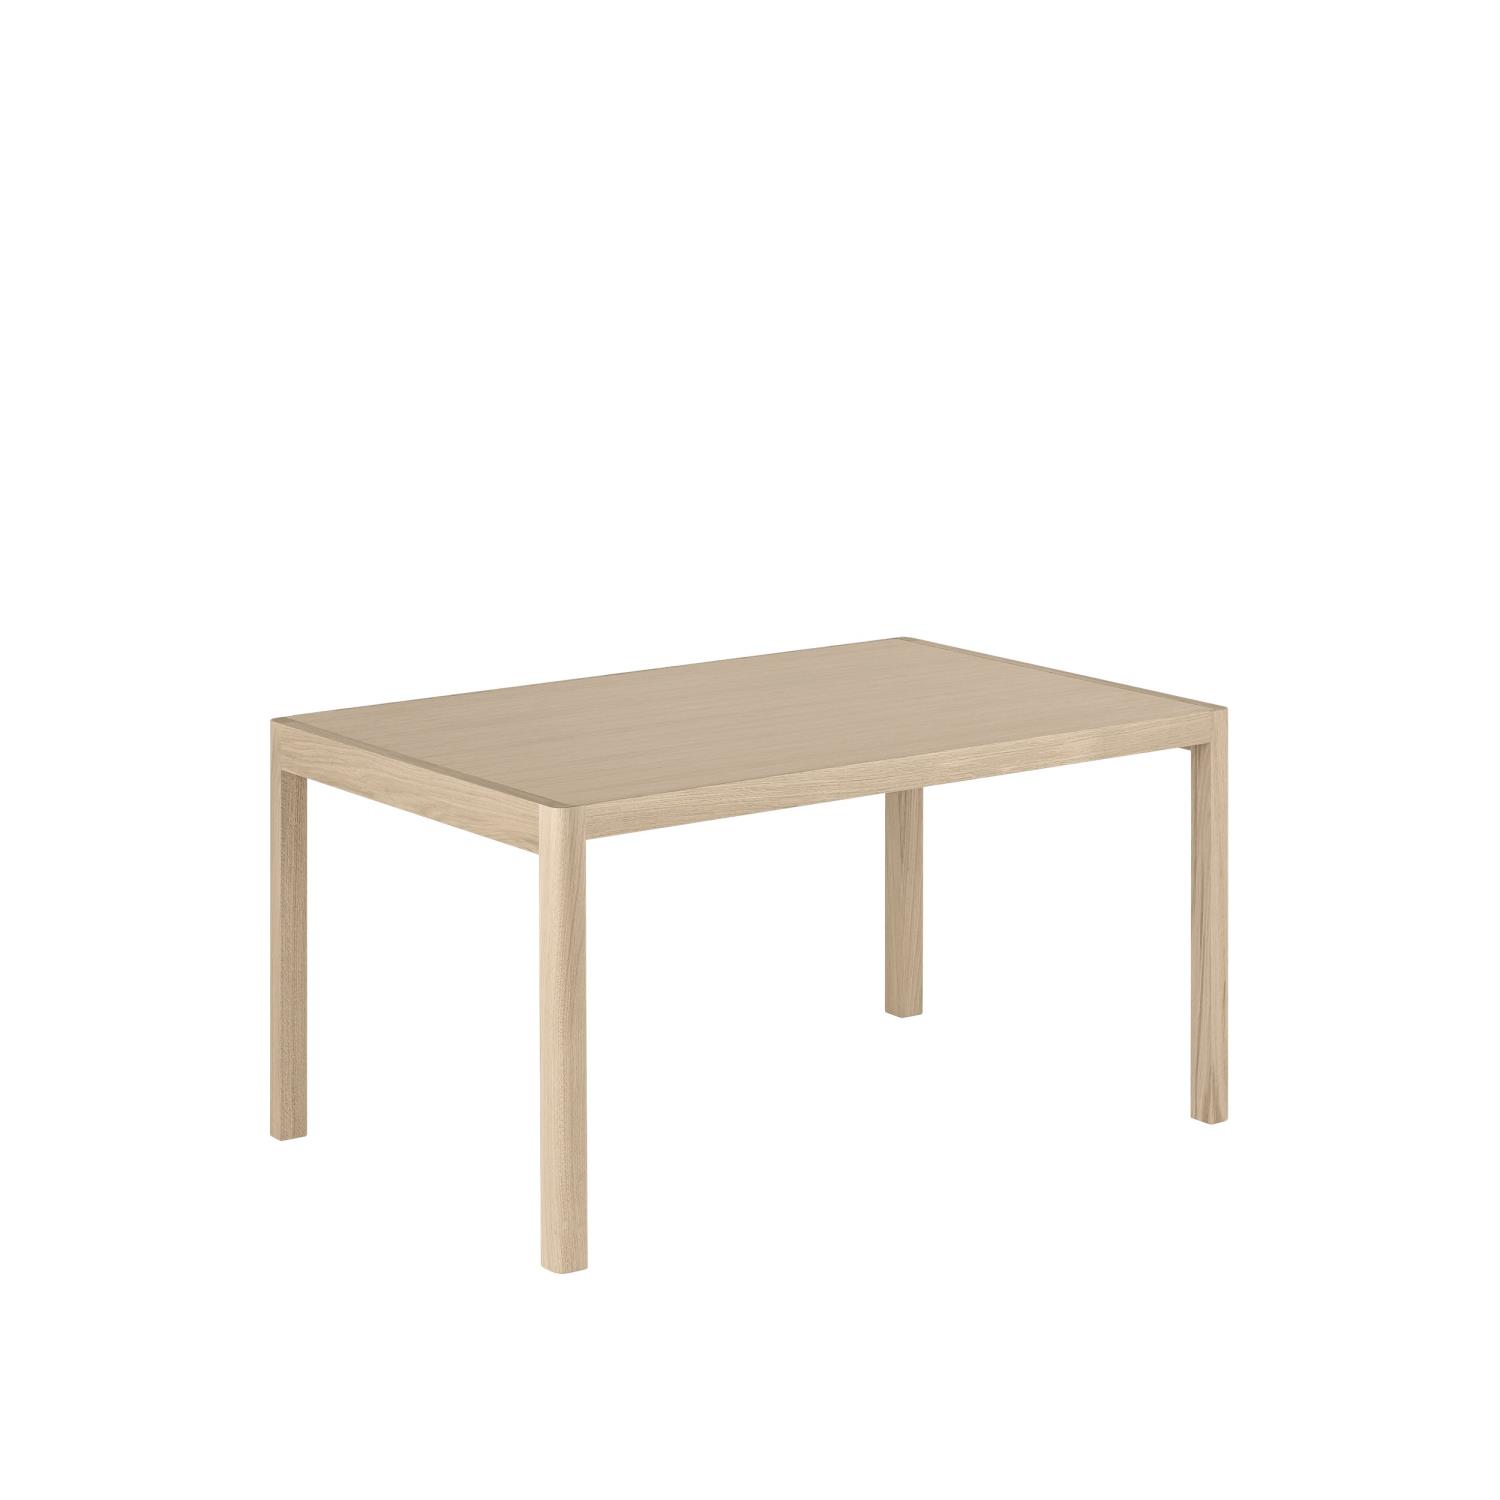 Muuto - Workshop Table - 140x92 - Oak Veneer and Oak